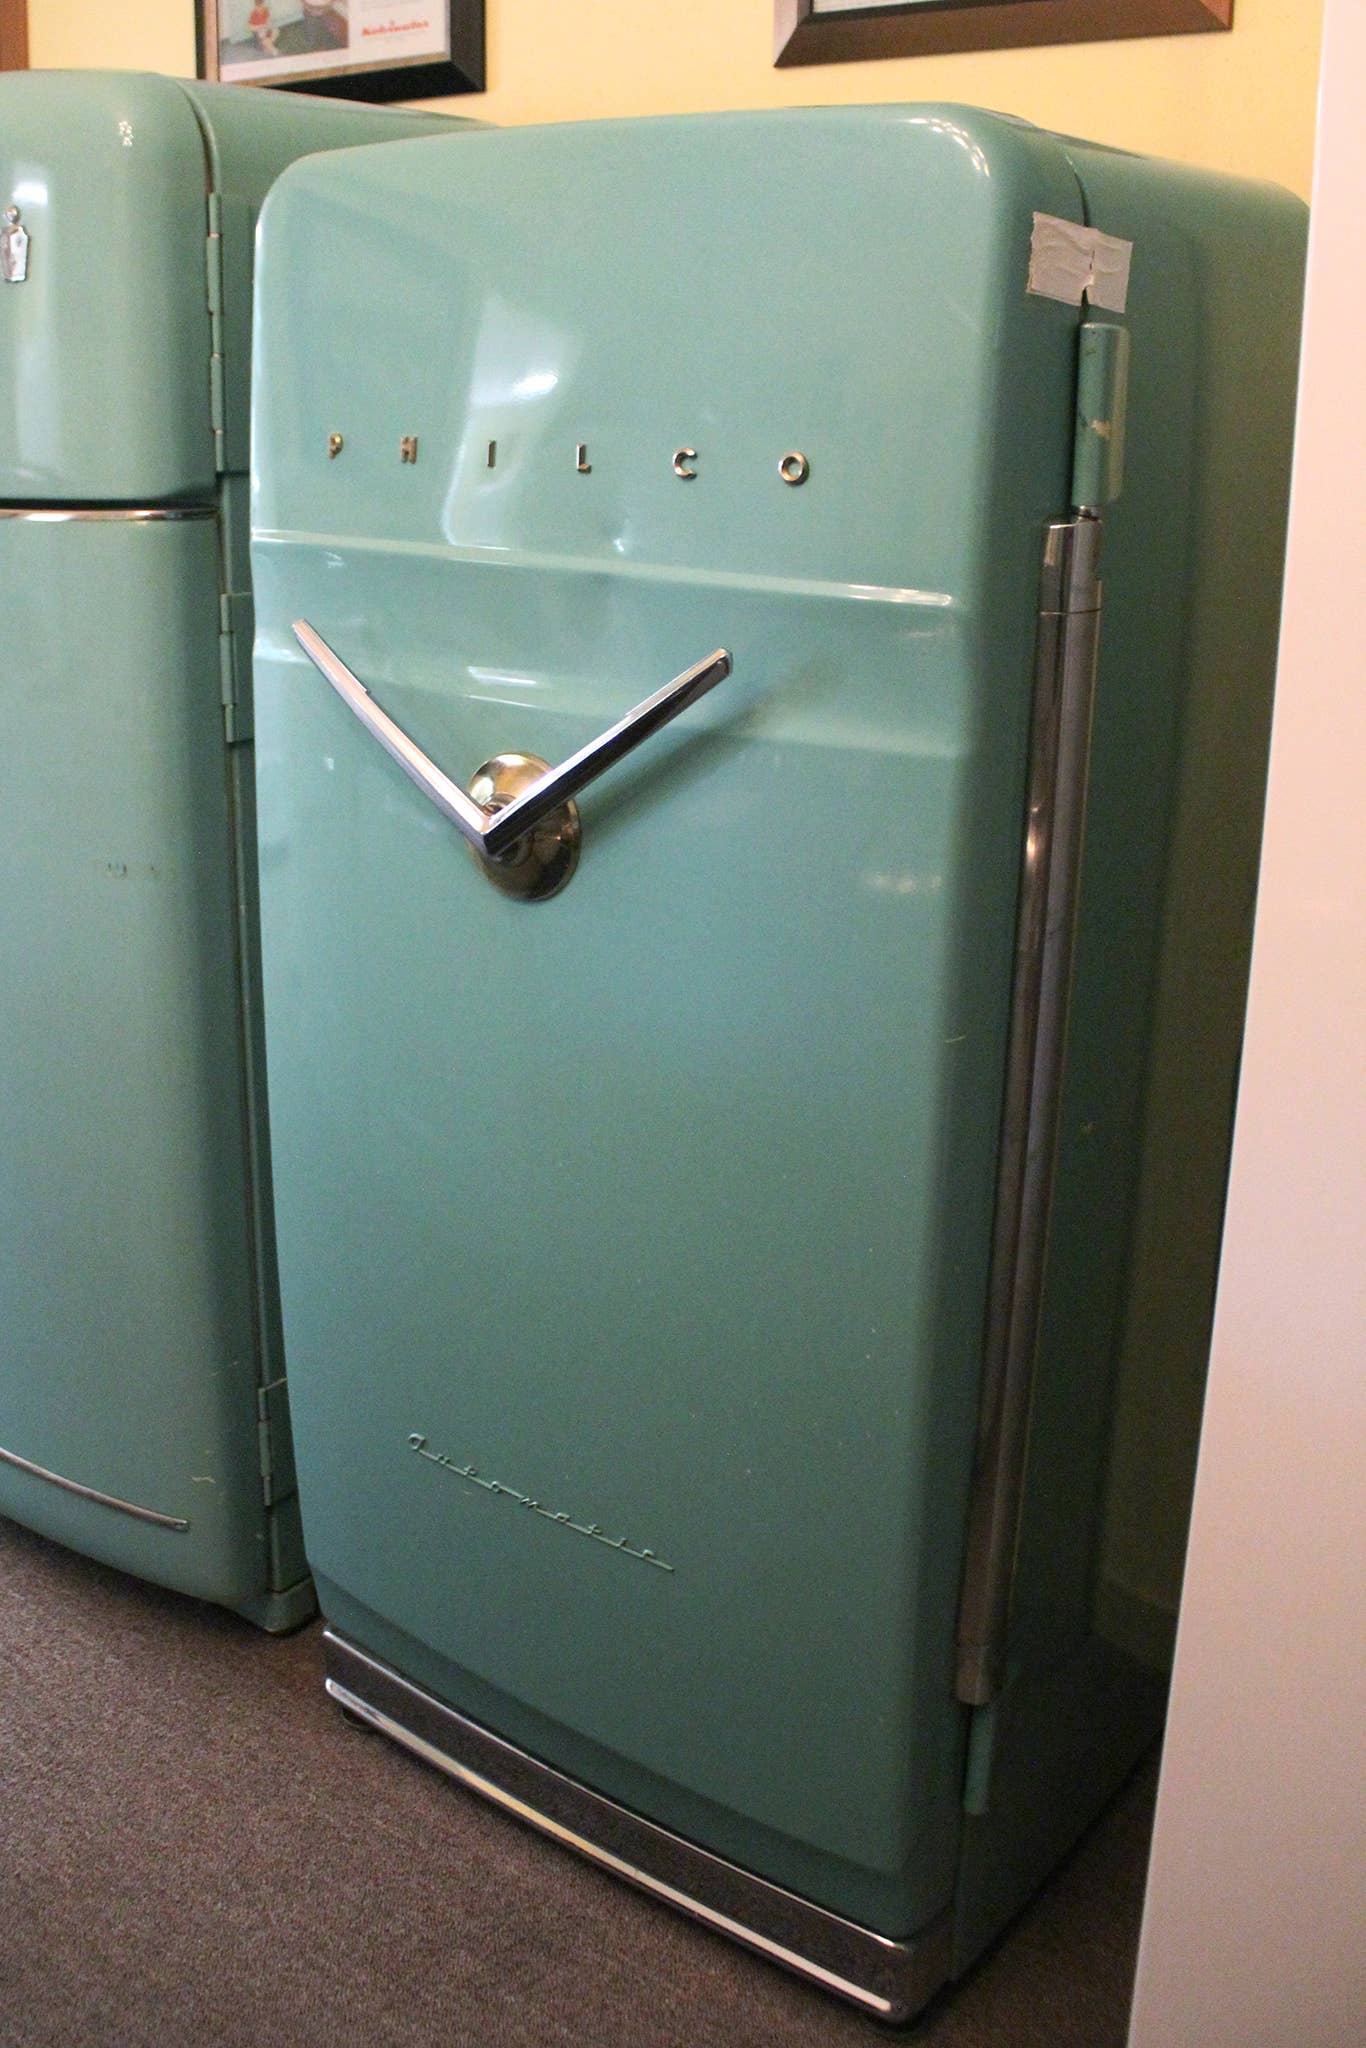 A Philco-Ford fridge. <em>Joe Ligo</em>